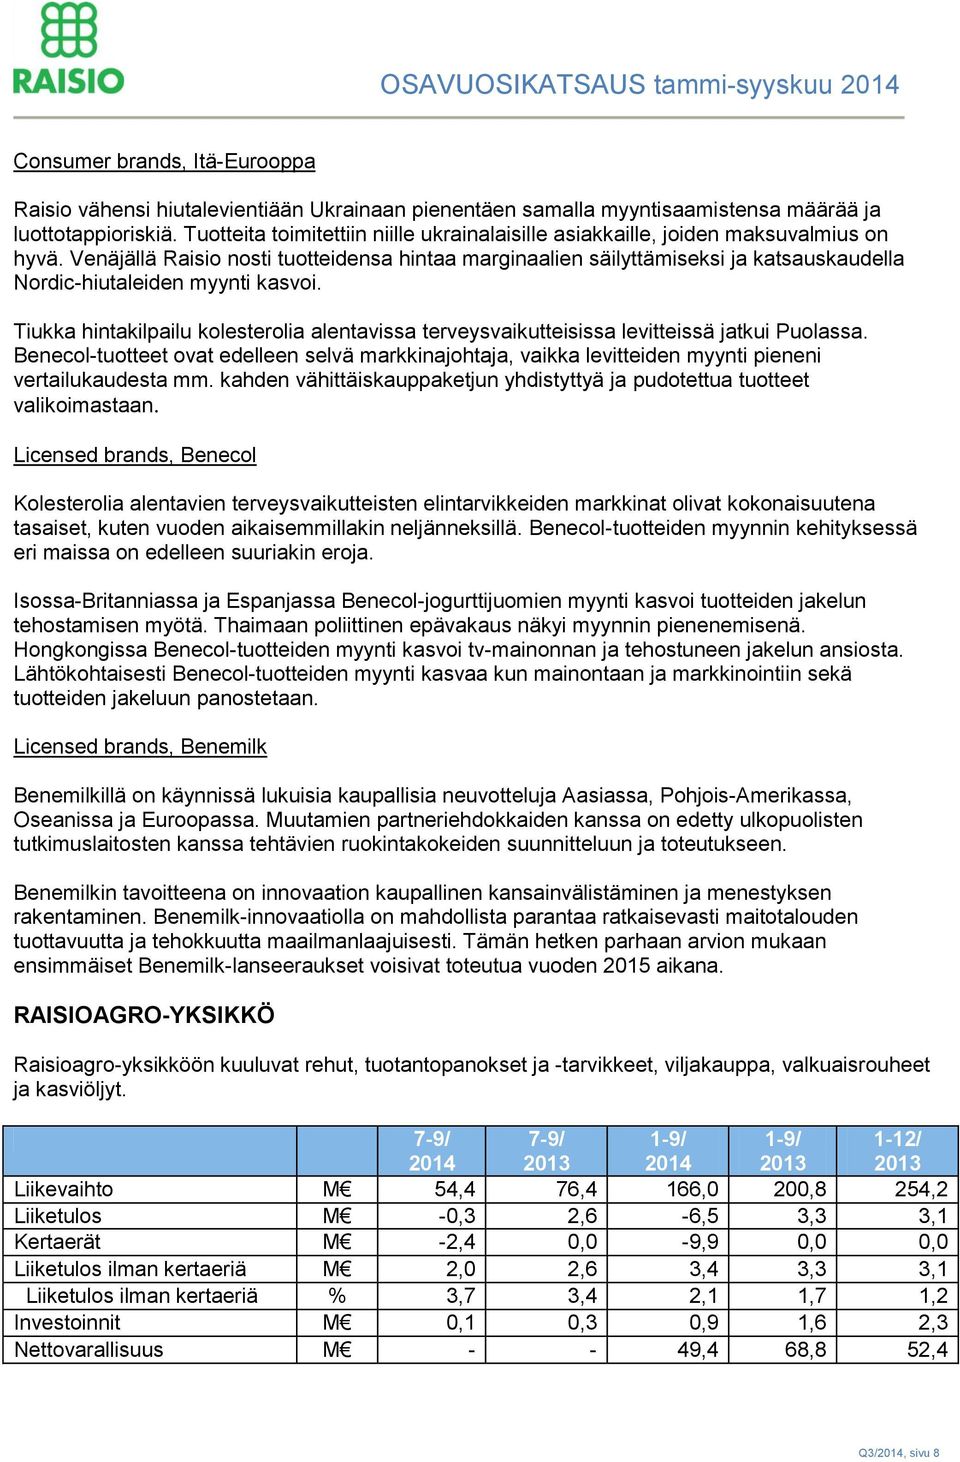 Venäjällä Raisio nosti tuotteidensa hintaa marginaalien säilyttämiseksi ja katsauskaudella Nordic-hiutaleiden myynti kasvoi.